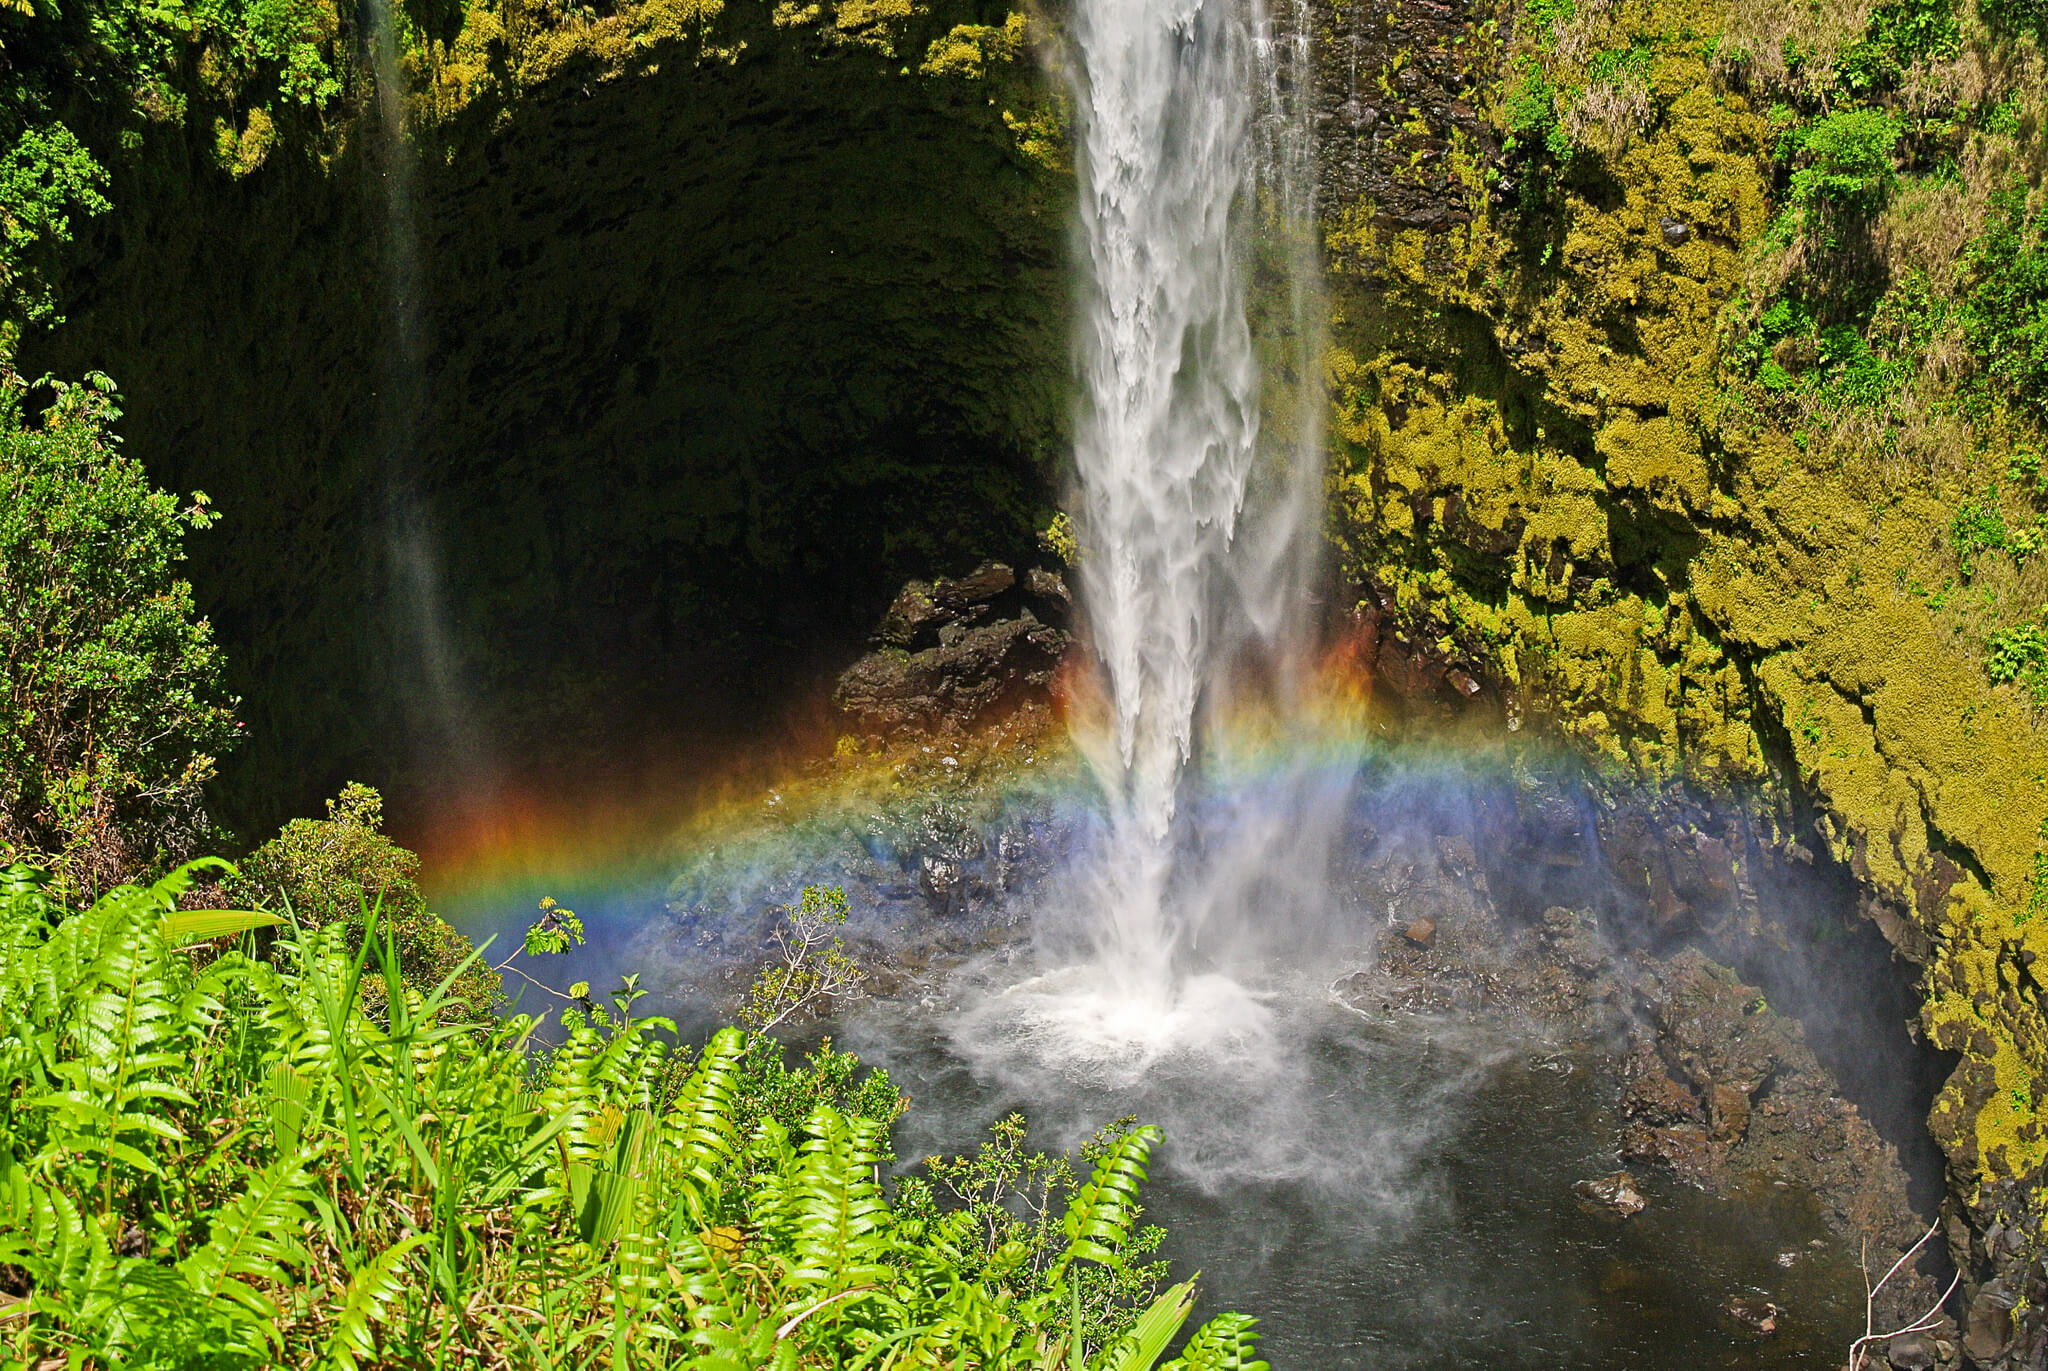 Akaka Falls in Hawaii.
Flickr User Rita Jo